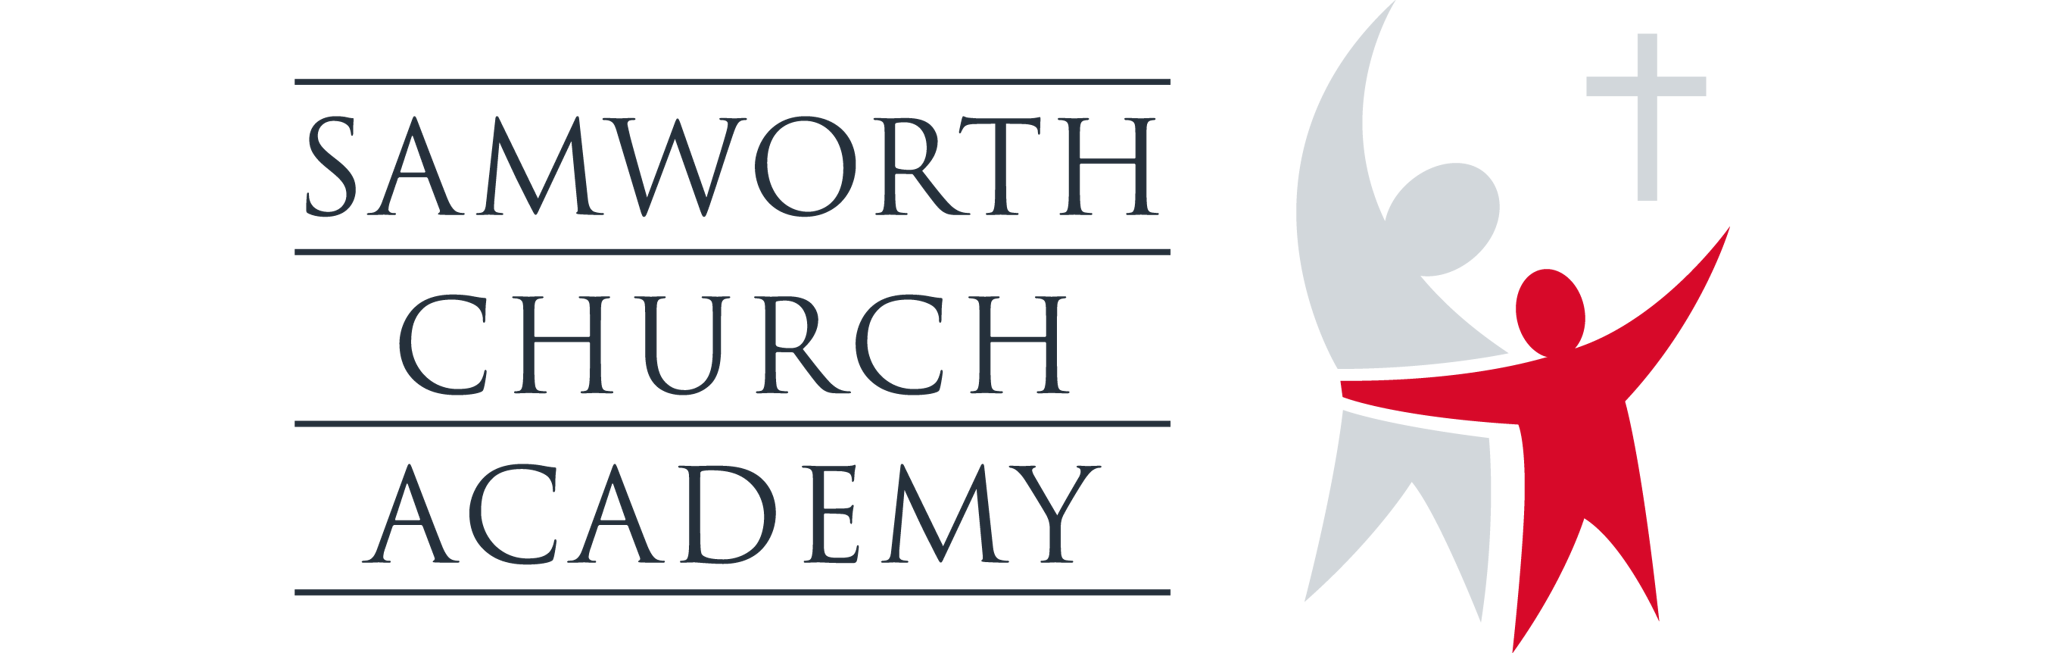 The Samworth Church Academy